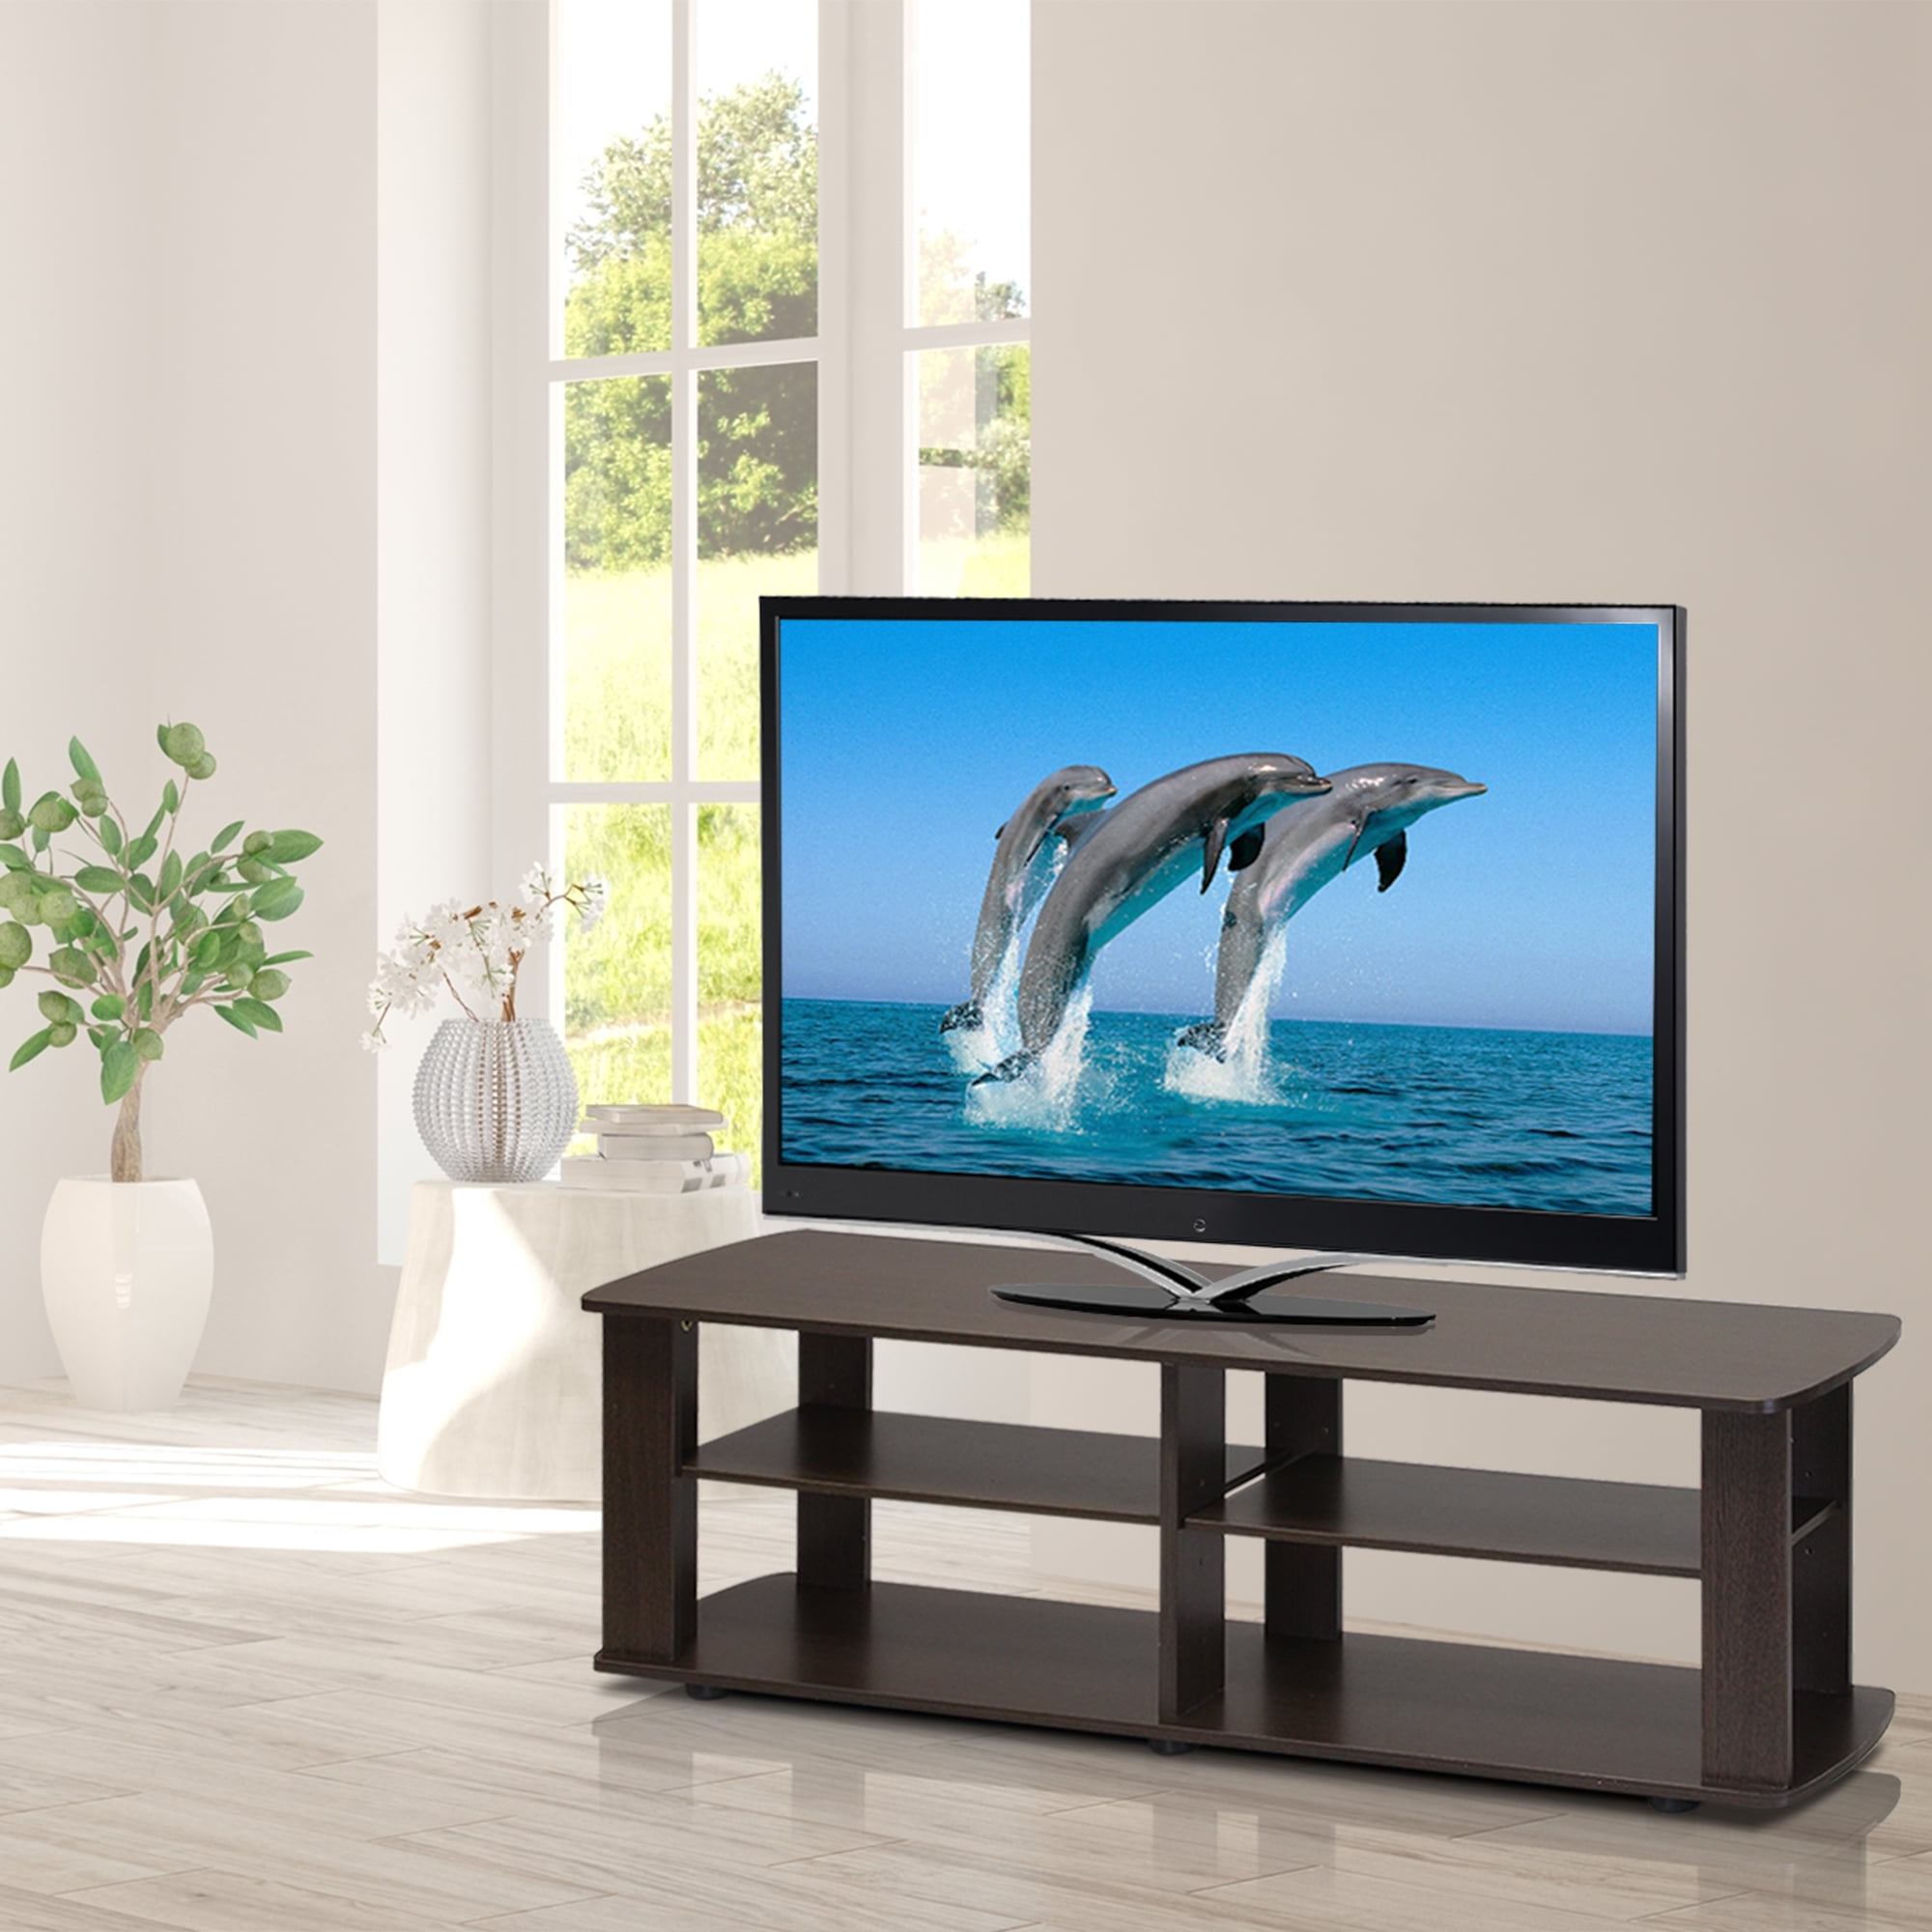 Sauder Beginnings 412995 Adjustable Highland Oak TV Stand for TVs up to 42 